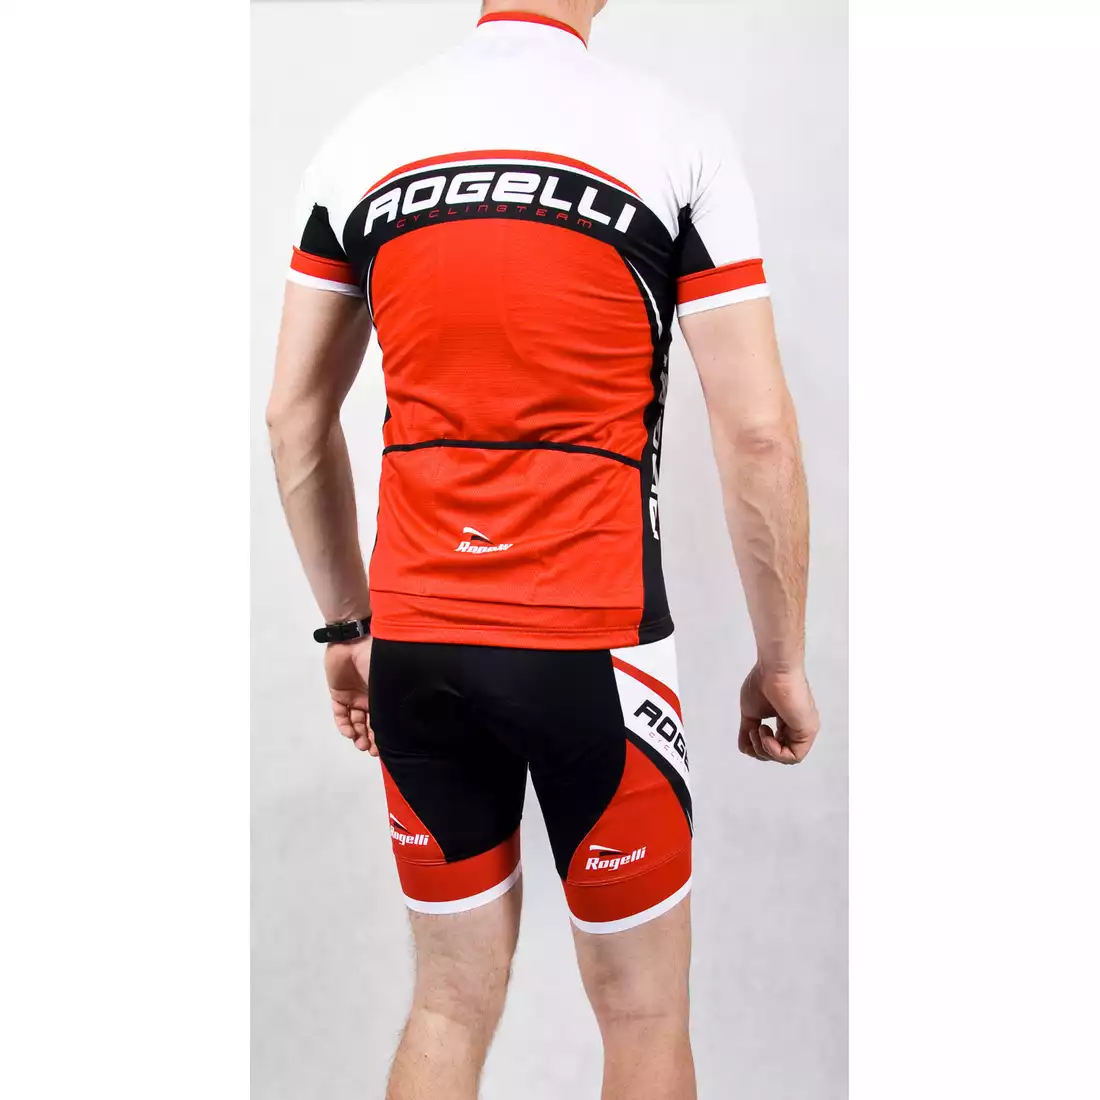 ROGELLI ANCONA - męska koszulka rowerowa, biało-czerwona